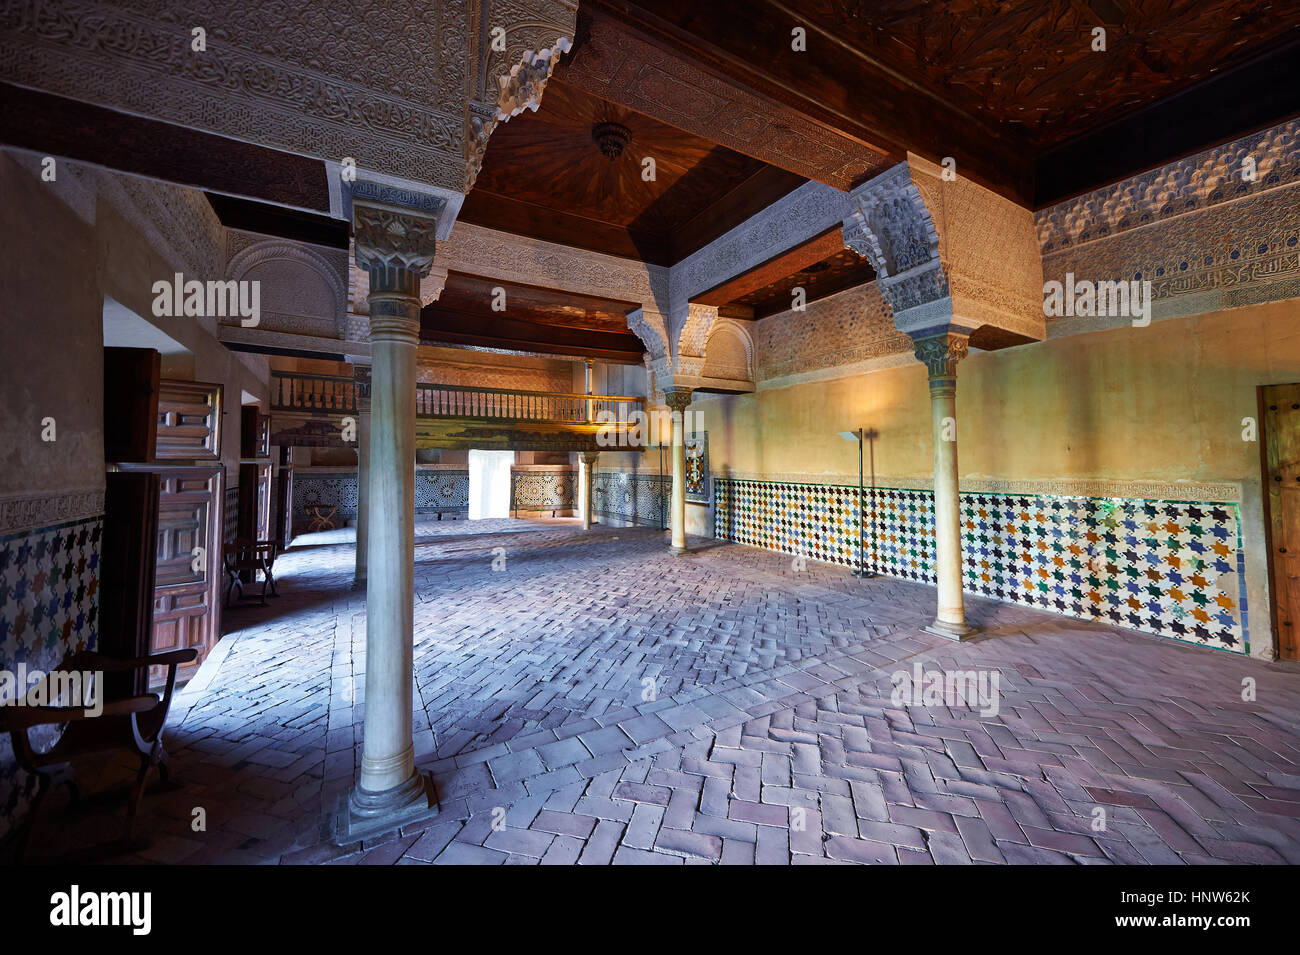 Arabesque architecture mauresque du Mexuar chambres administratives dans l'Palacios Nazaries. Alhambra, Granada, Andalousie, espagne. Banque D'Images